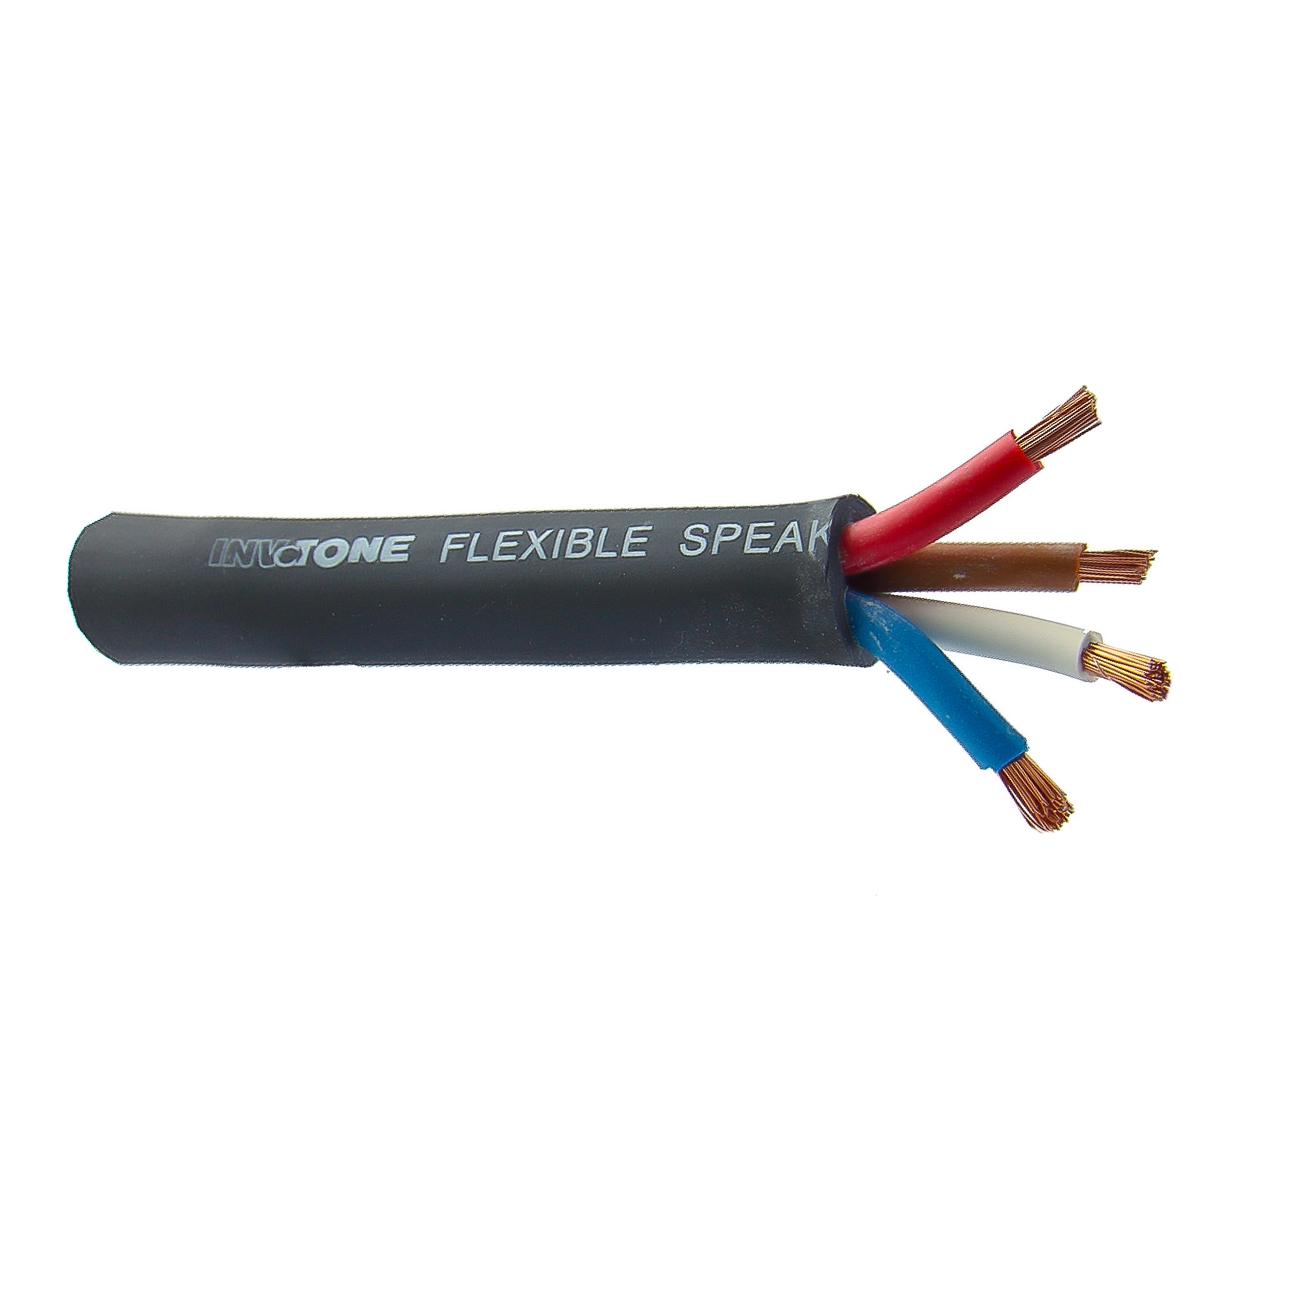 Invotone IPC1644 - Колоночный высококач. кабель, диам.13,5 мм (4 жилы х 4 мм2)